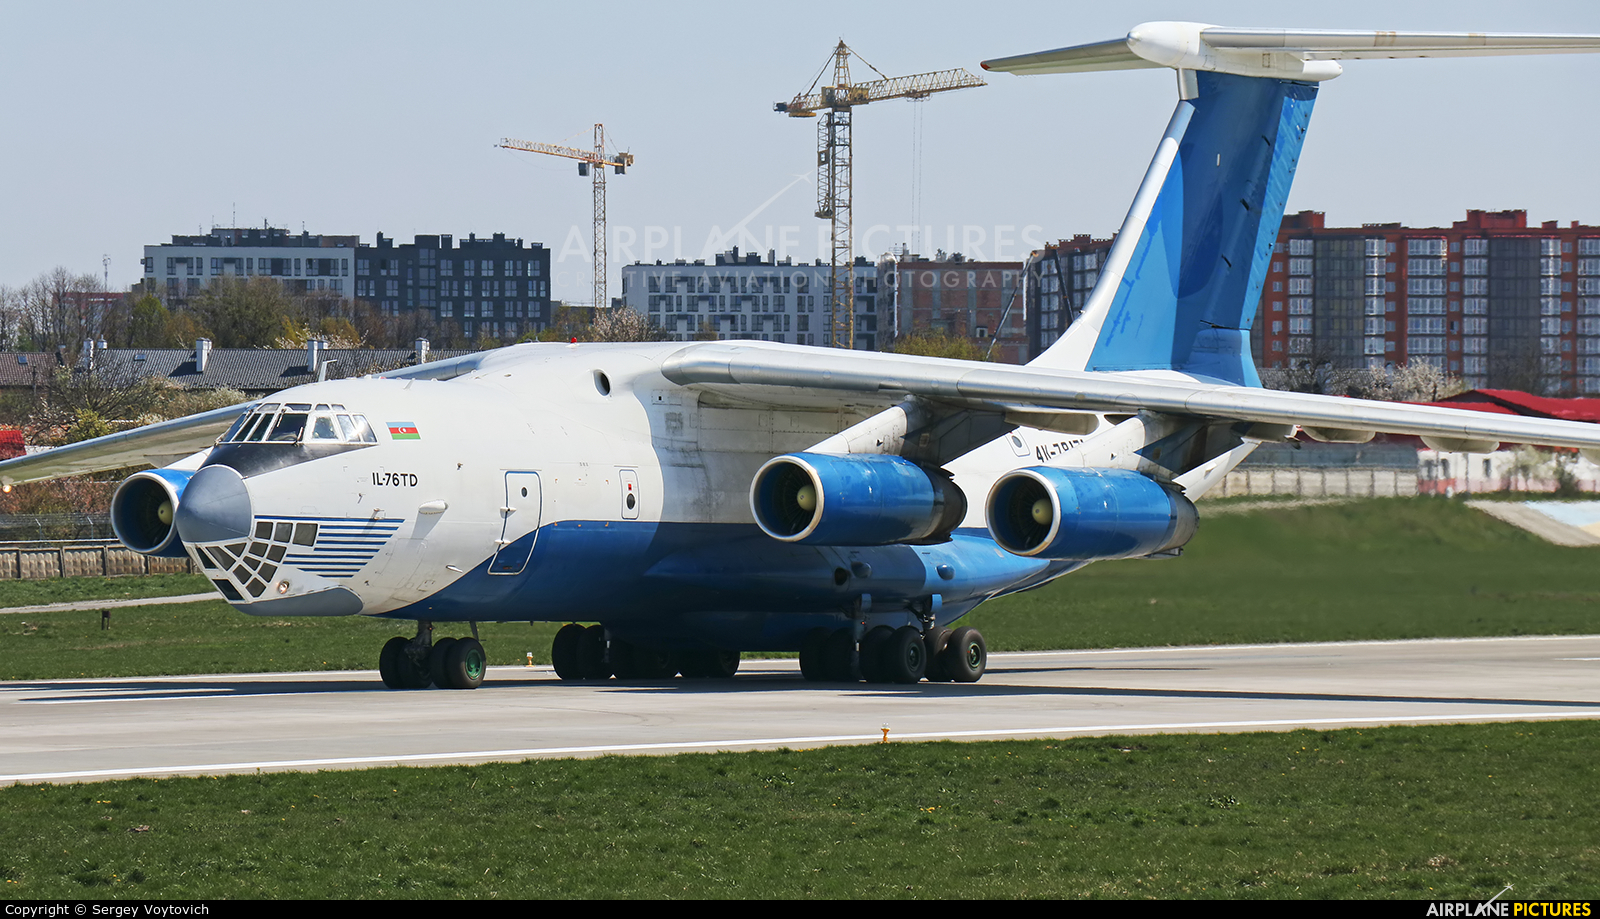 Δύο αεροσκάφη με ανθρωπιστική βοήθεια στέλνει η Ρωσία στην Κούβα